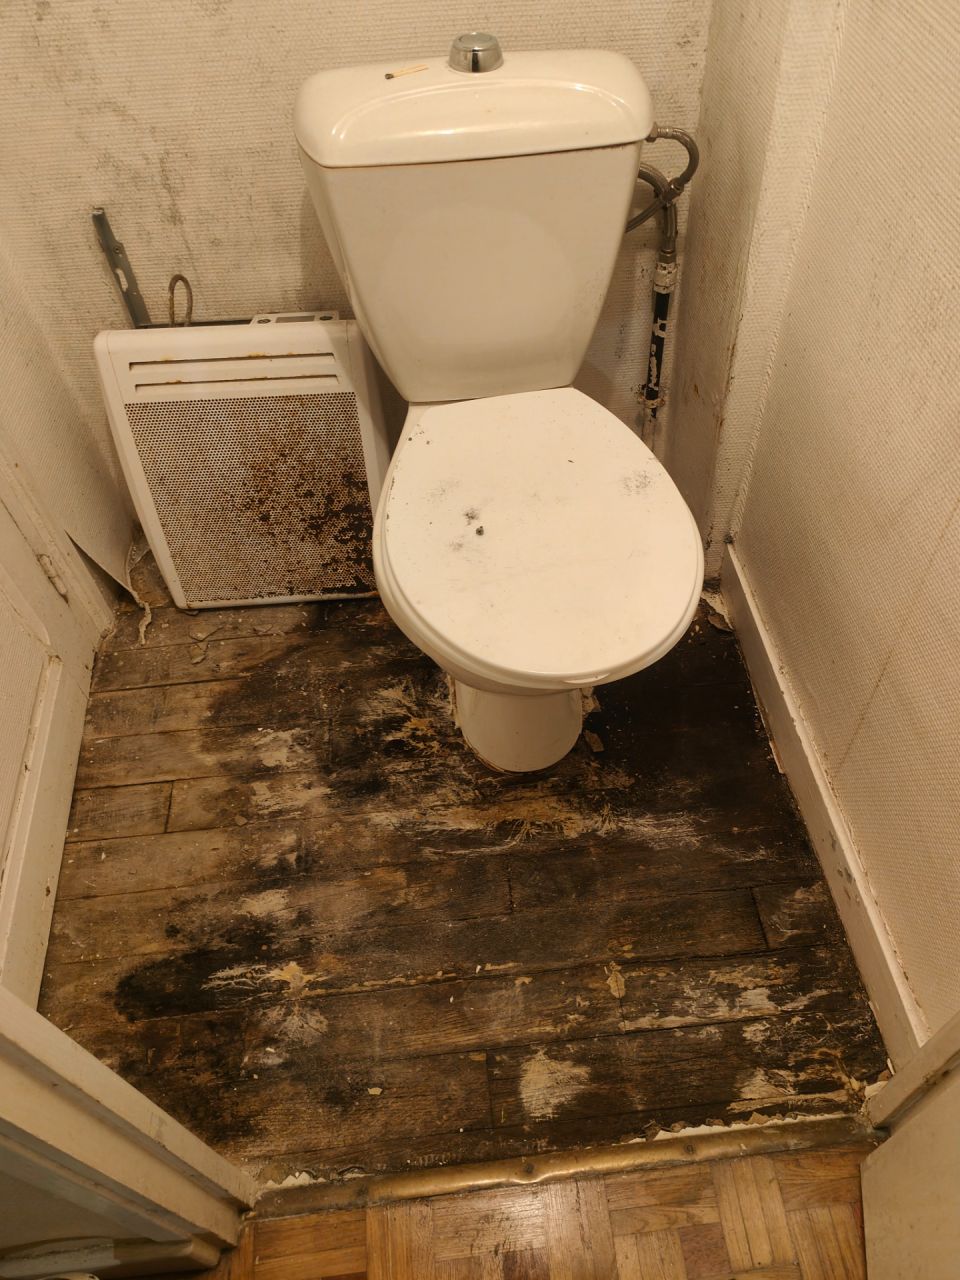 Le sol des WC du rez de chausse aprs avoir dpos le sol pourri. Photo aprs 2 jours de ventilation active !